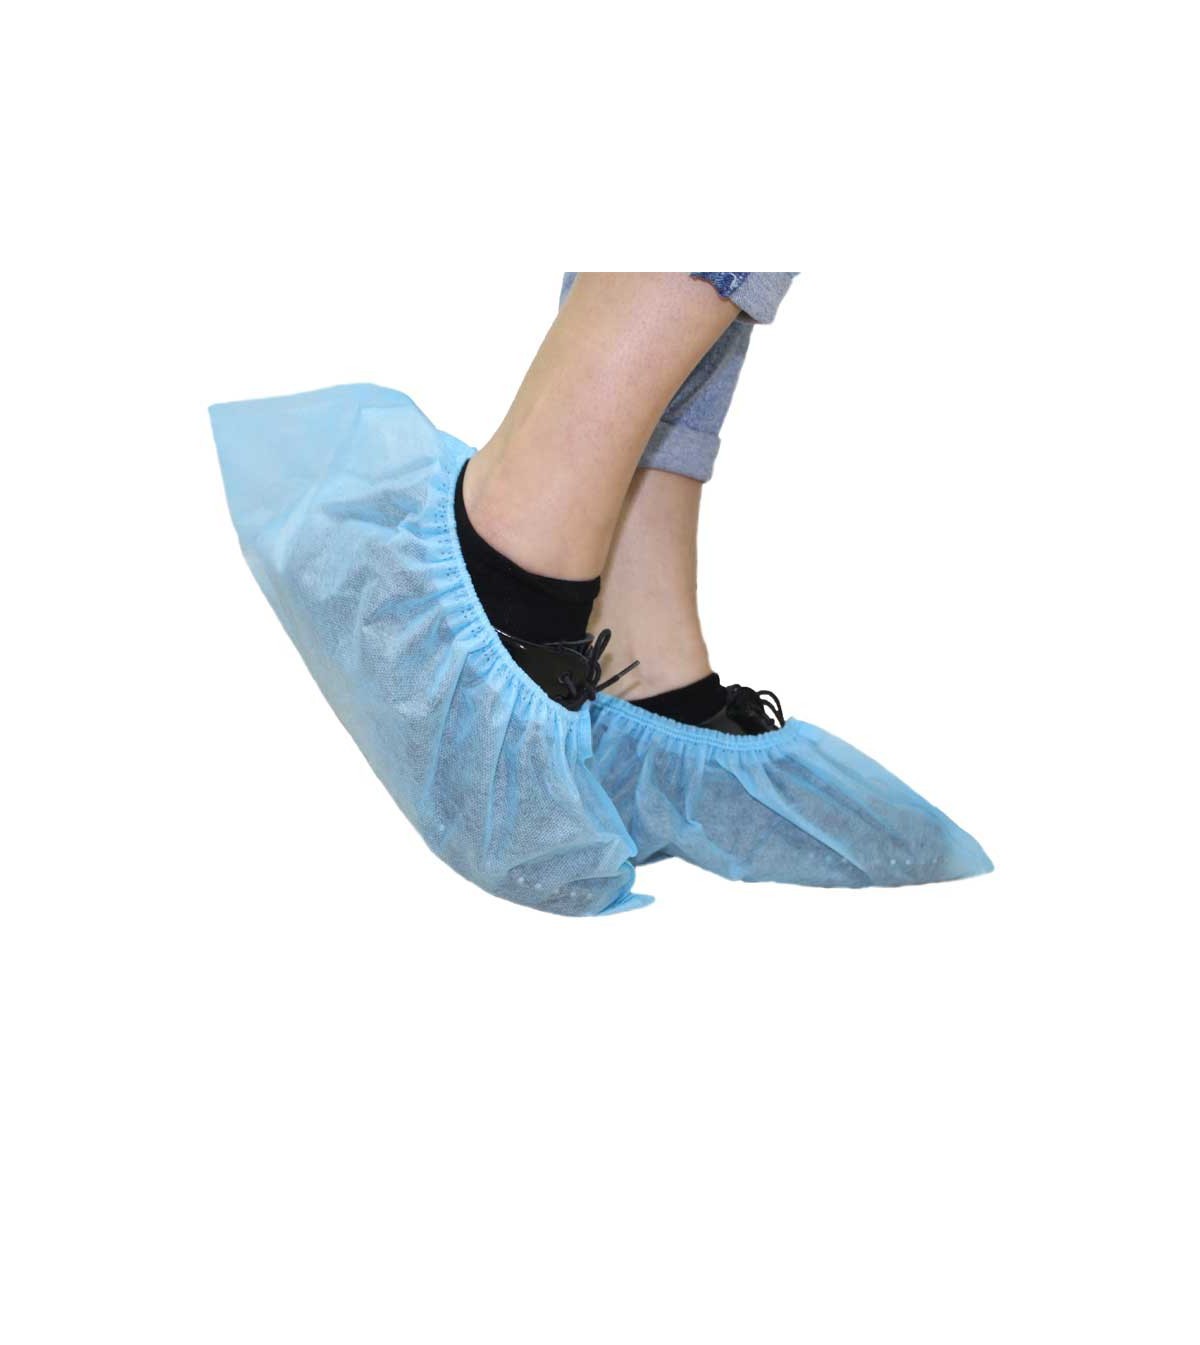 Calzas quirúrgicas - Cubrezapatos desechables - Protección laboral